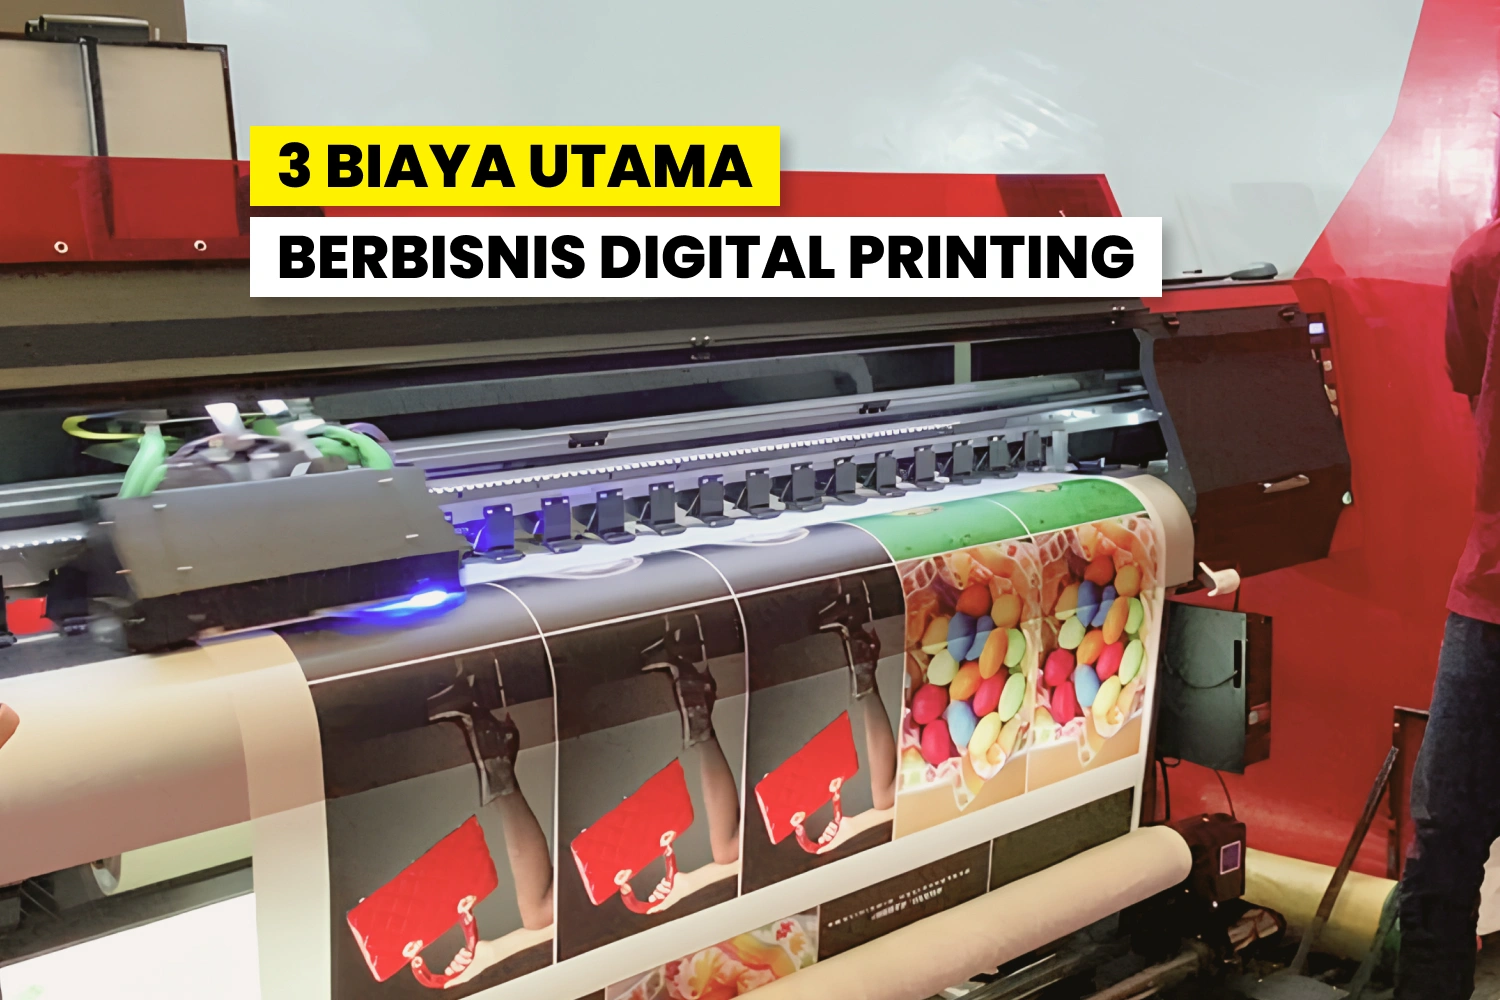 3 Biaya Utama Di Bisnis Digital Printing